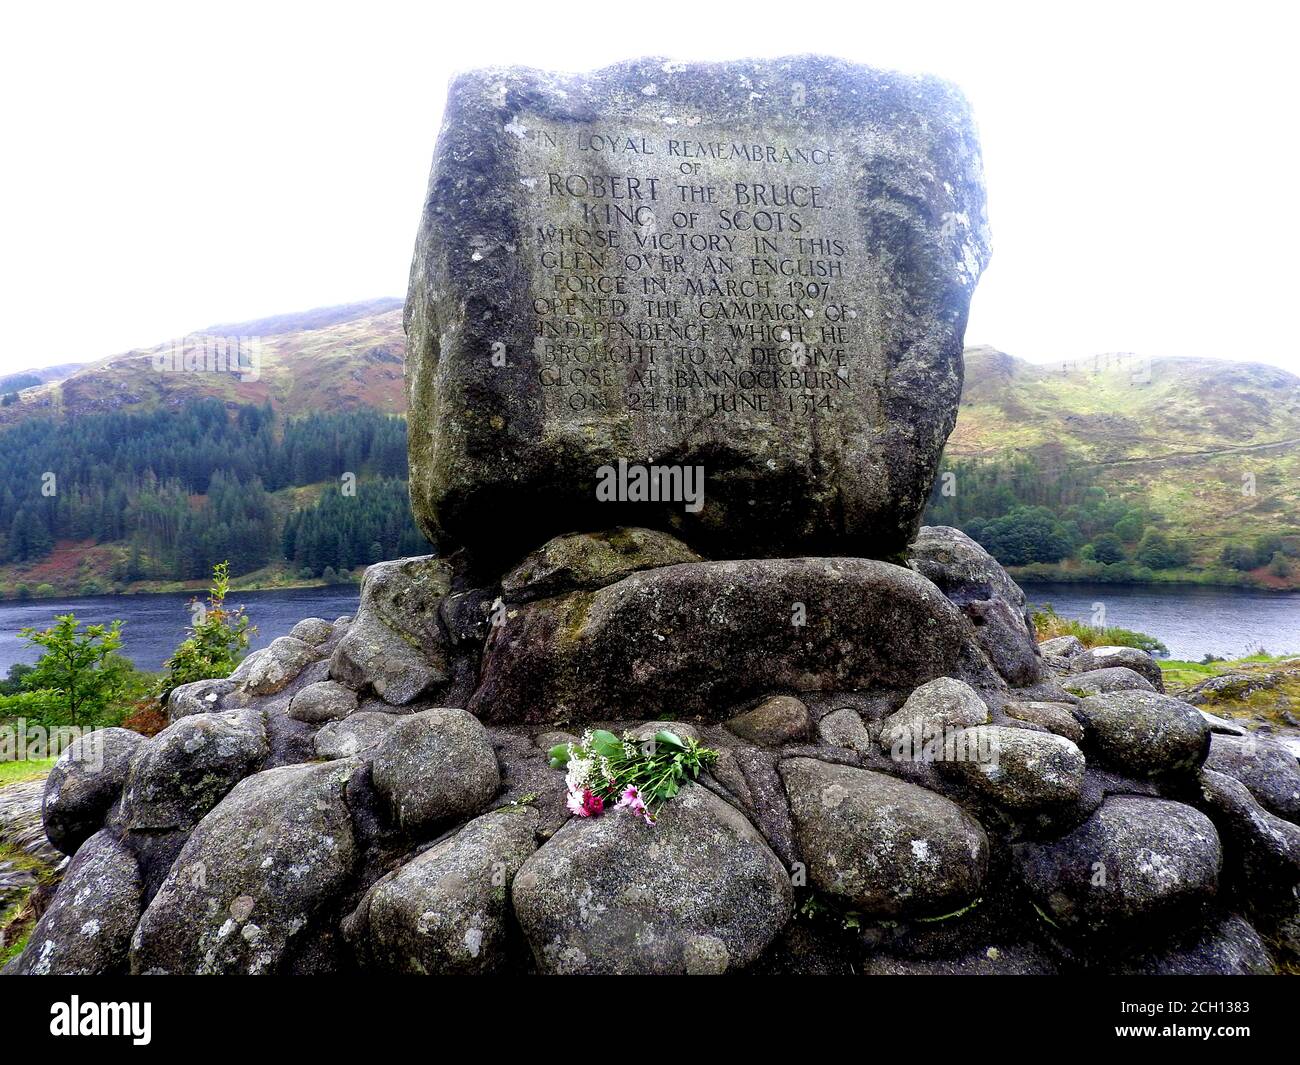 Un tributo floreale al memoriale Robert the Bruce (conte di Carrick), vicino a Loch Troon, Galloway (fotografia del 2020). La Battaglia di Glen Trool ebbe luogo nella prima Guerra d'Indipendenza scozzese, combattuta nell'aprile 1307. Glen Trool è un glen stretto nella zona meridionale di Galloway, in Scozia, in cui Loch Trool (dietro il monumento) è situato. Mentre i soldati inglesi si avvicinarono alla stretta glen in un unico file, gli uomini di Bruce li scagliarono massi e frecce verso il basso . I soldati inglesi furono uccisi o ritirati e Bruce fu vittorioso. Foto Stock